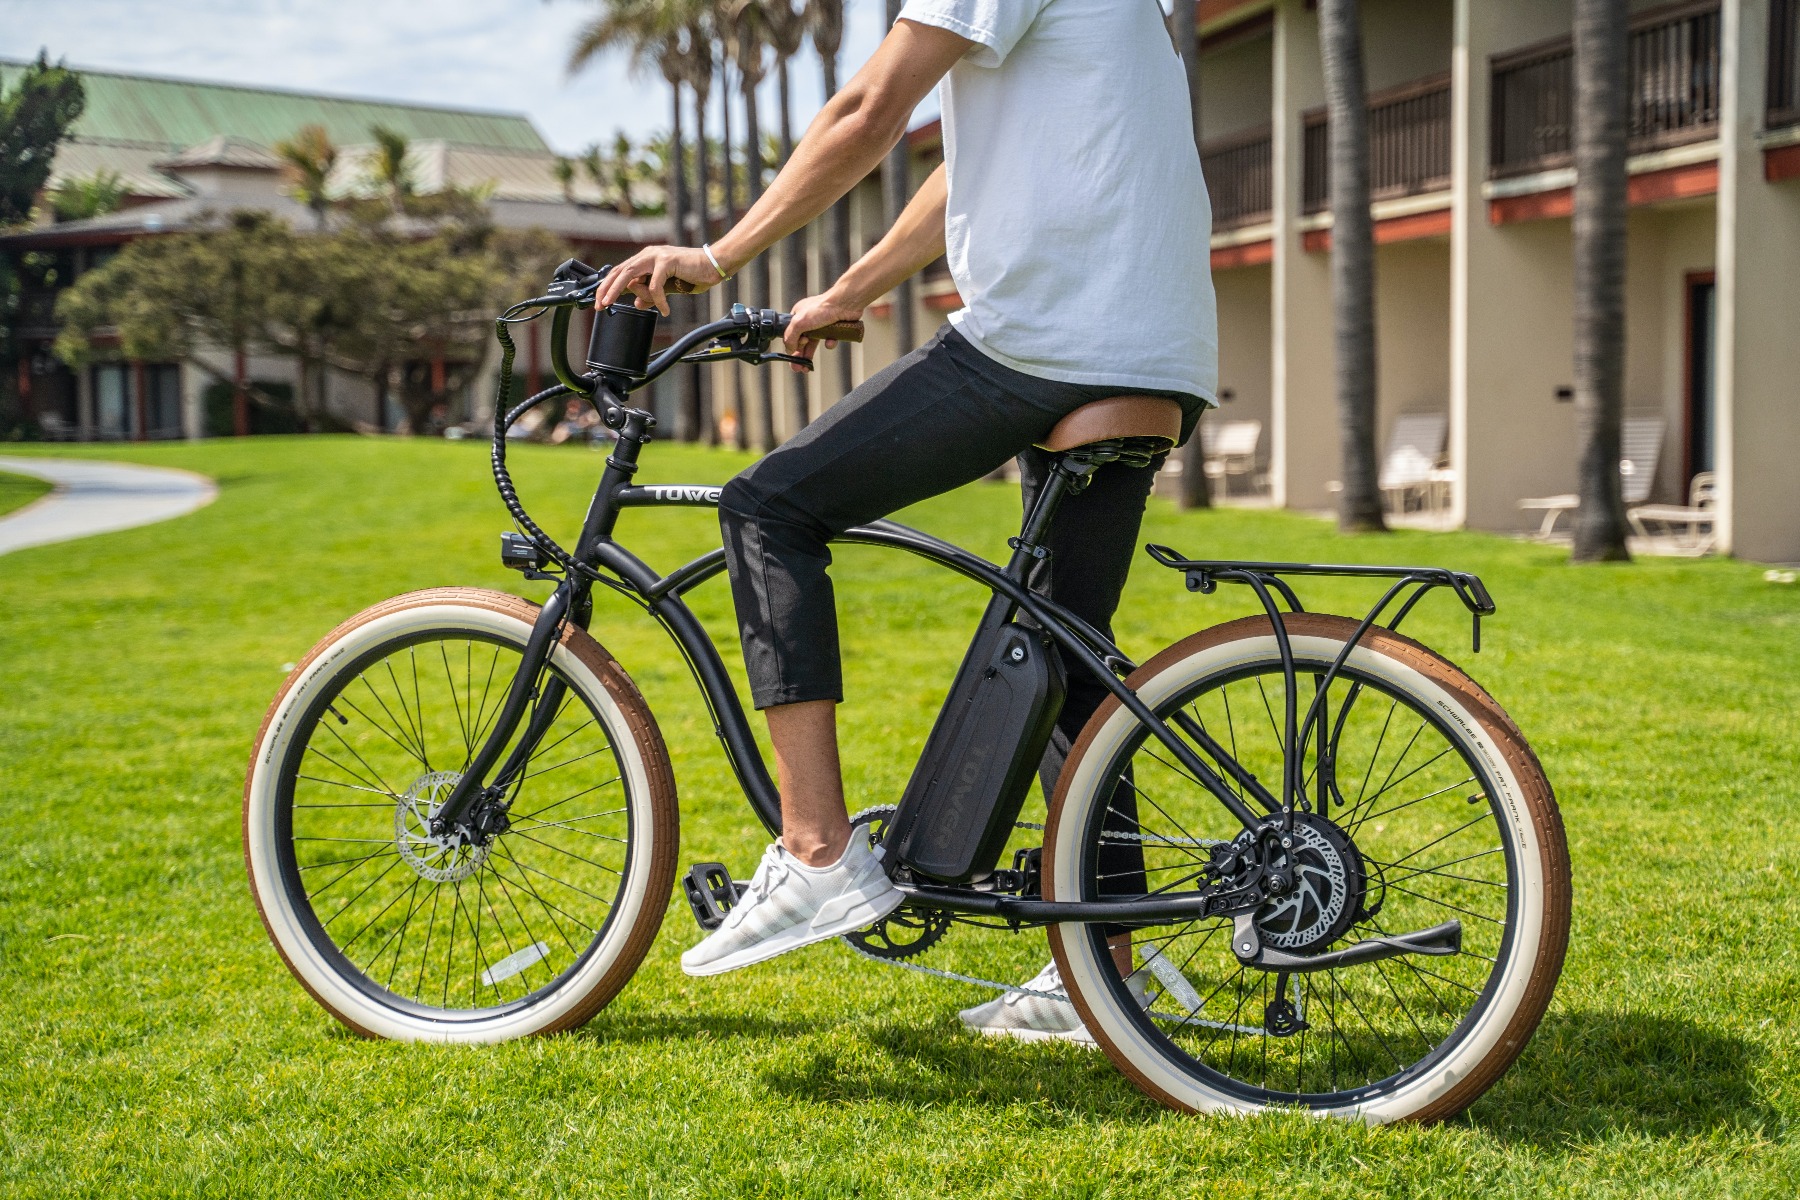 Zeeman Dakraam overdrijving E-bike koopgids: waar op letten bij aankoop elektrische fiets?